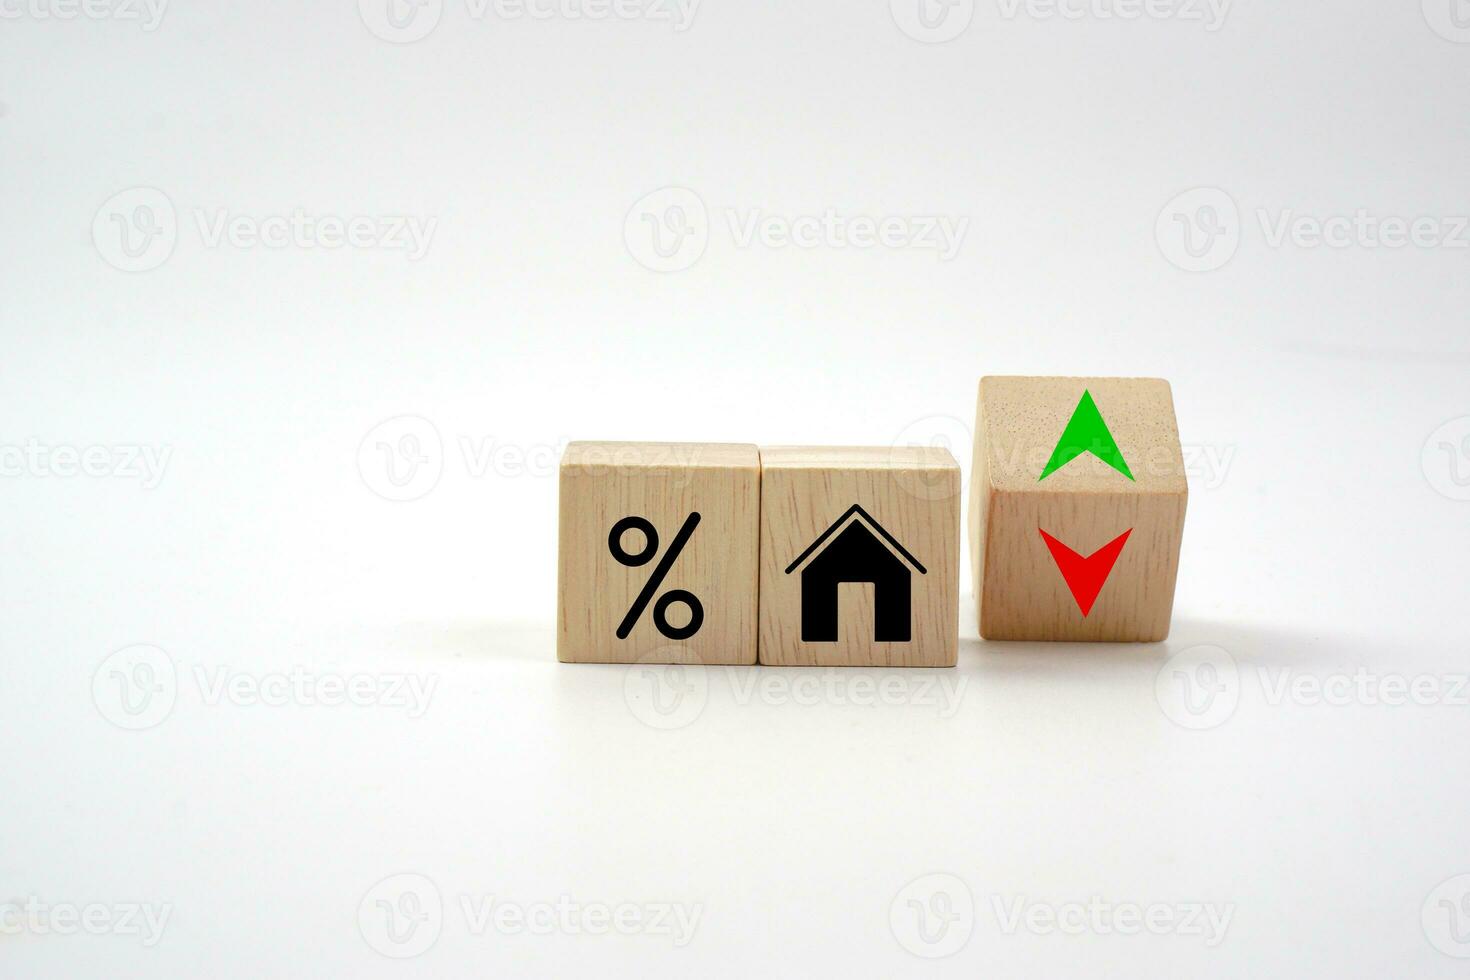 casa icono con porcentaje en de madera bloquear y arriba y abajo de flecha. interesar Velocidad finanzas, real inmuebles y casa préstamo concepto. foto